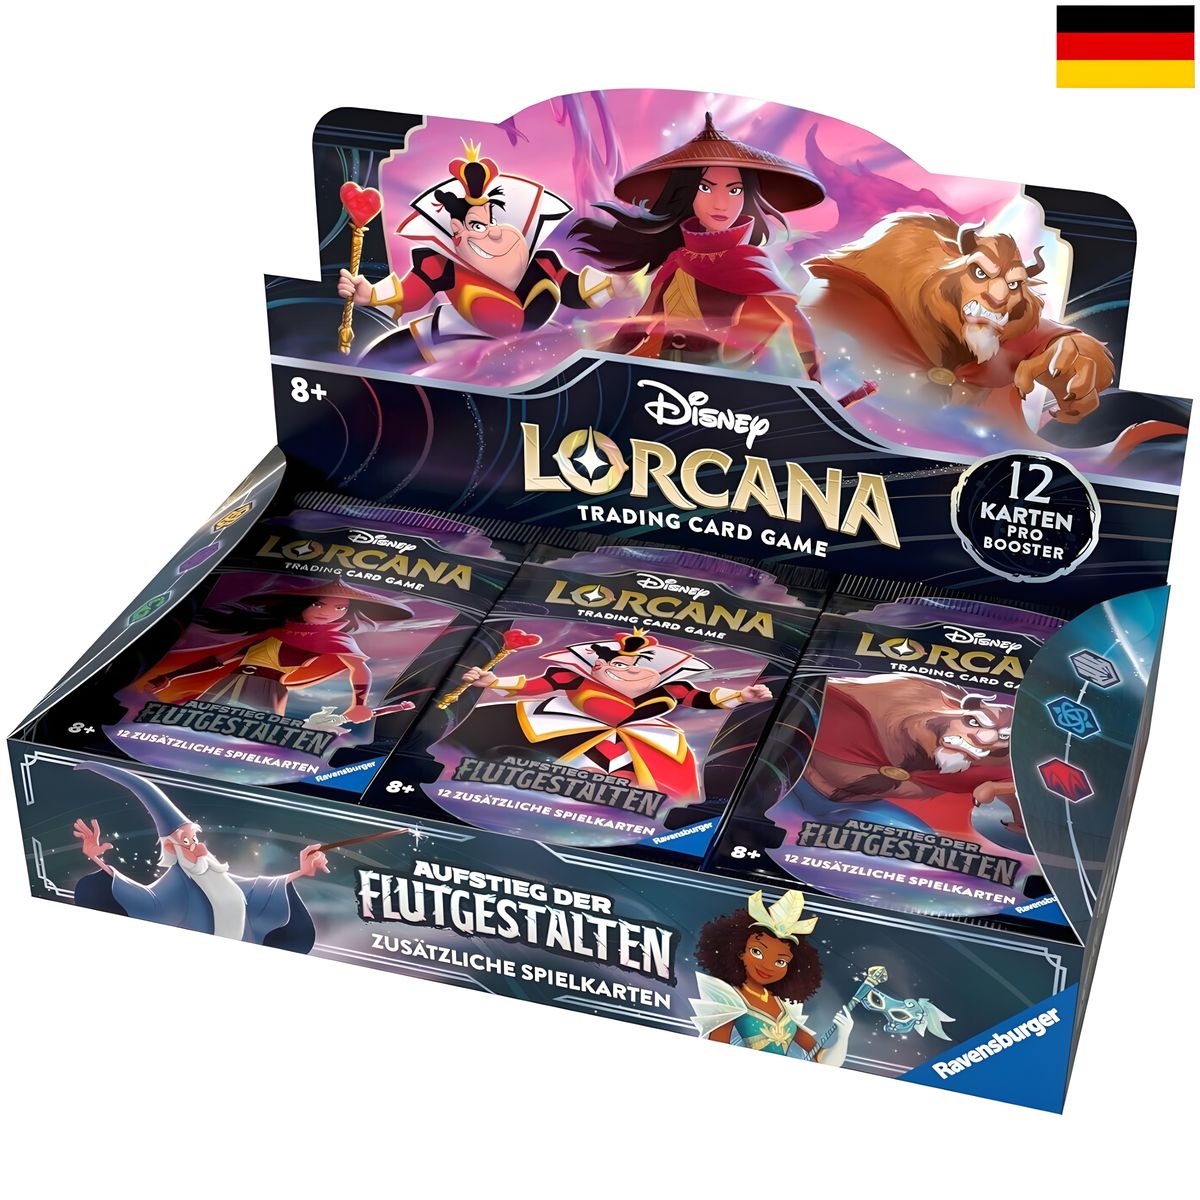 Disney Lorcana - Aufstieg der Flutgestalten - Display - Deutsch